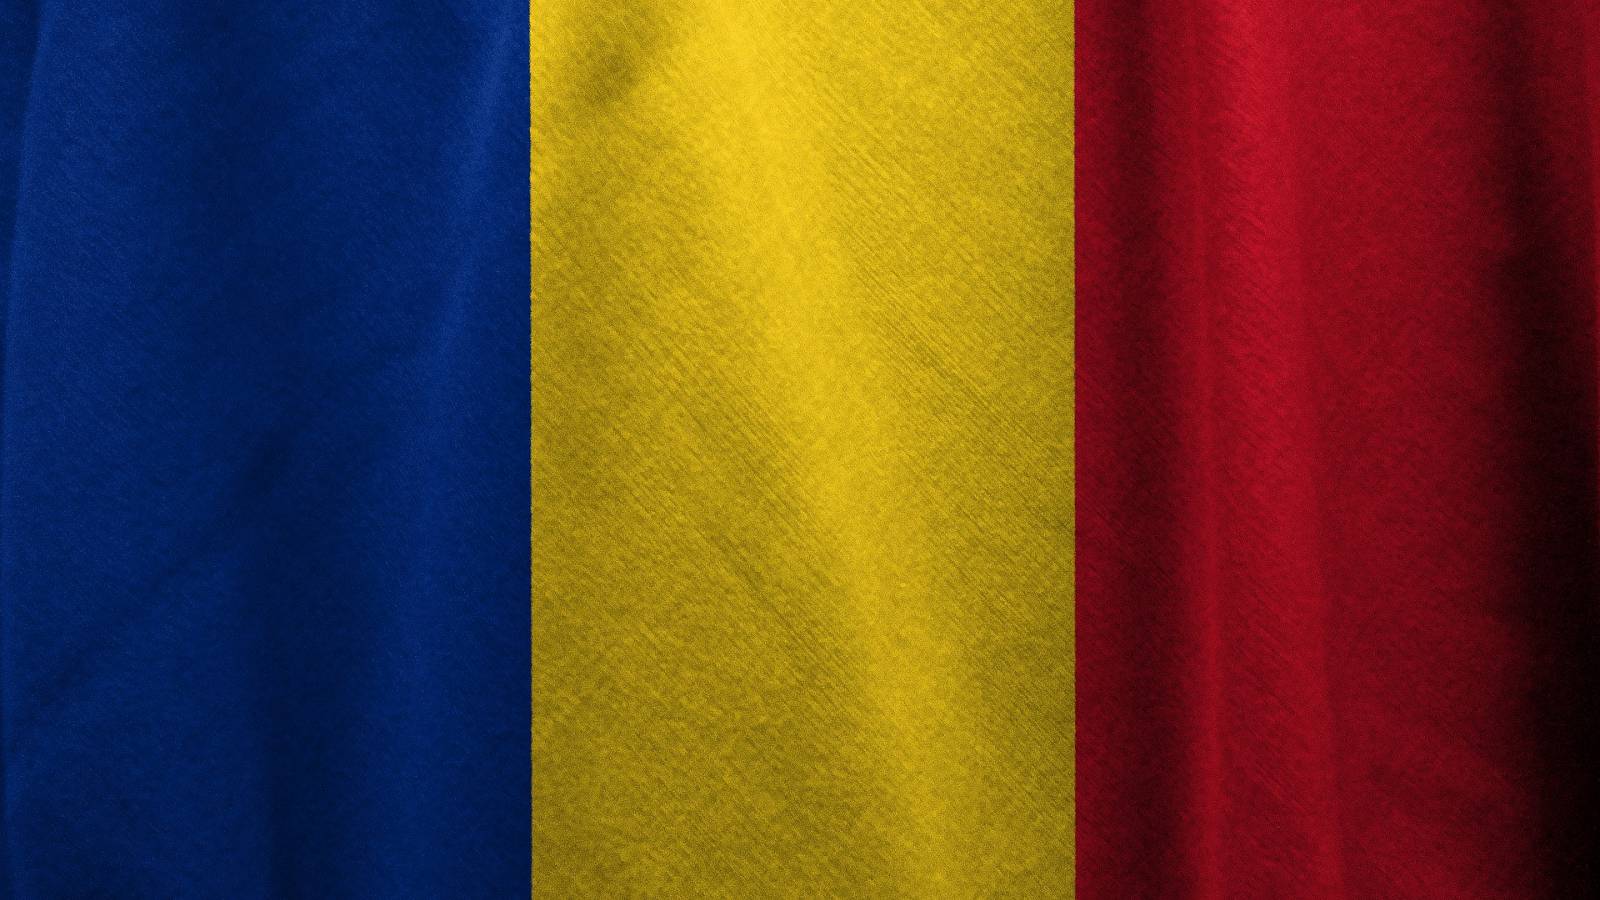 Combien de nouveaux cas de COVID-19 ont diminué en Roumanie au cours des 7 derniers jours